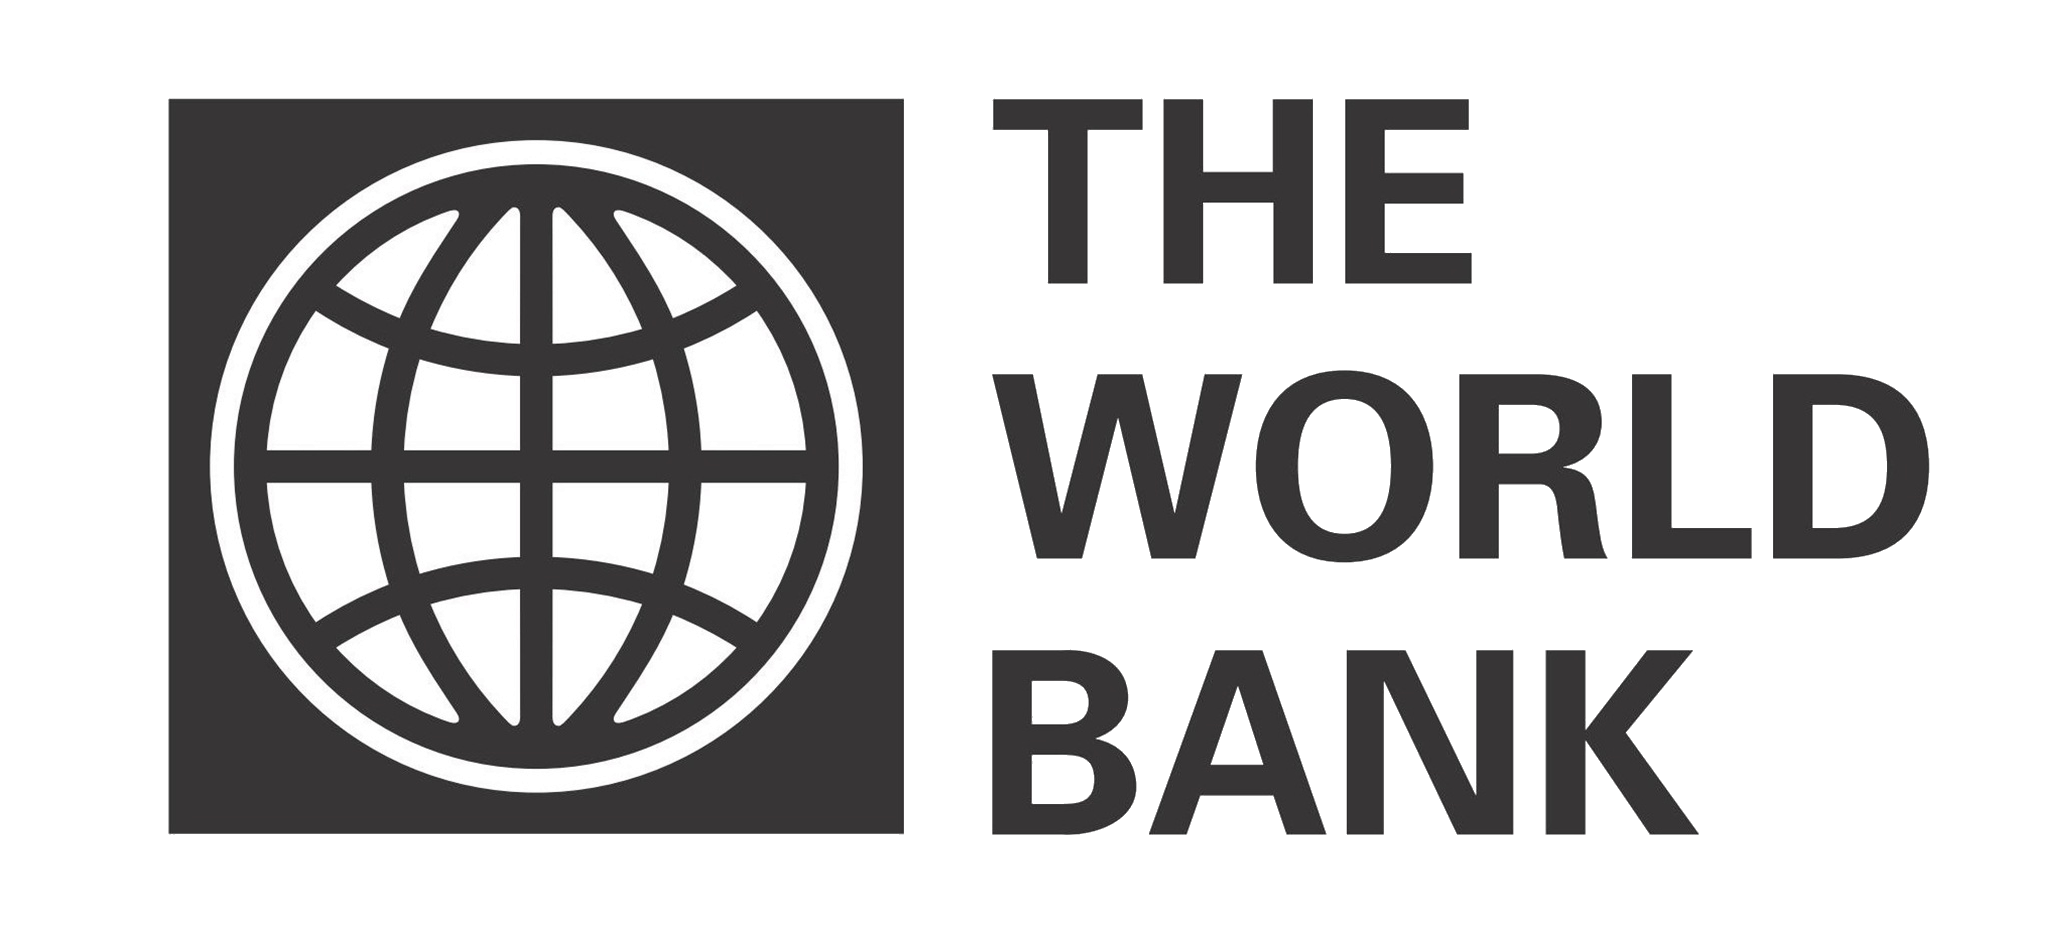 Группа Всемирного банка эмблема. Всемирного банка (the World Bank). Всемирный банк США. Всемирный банк картинки.